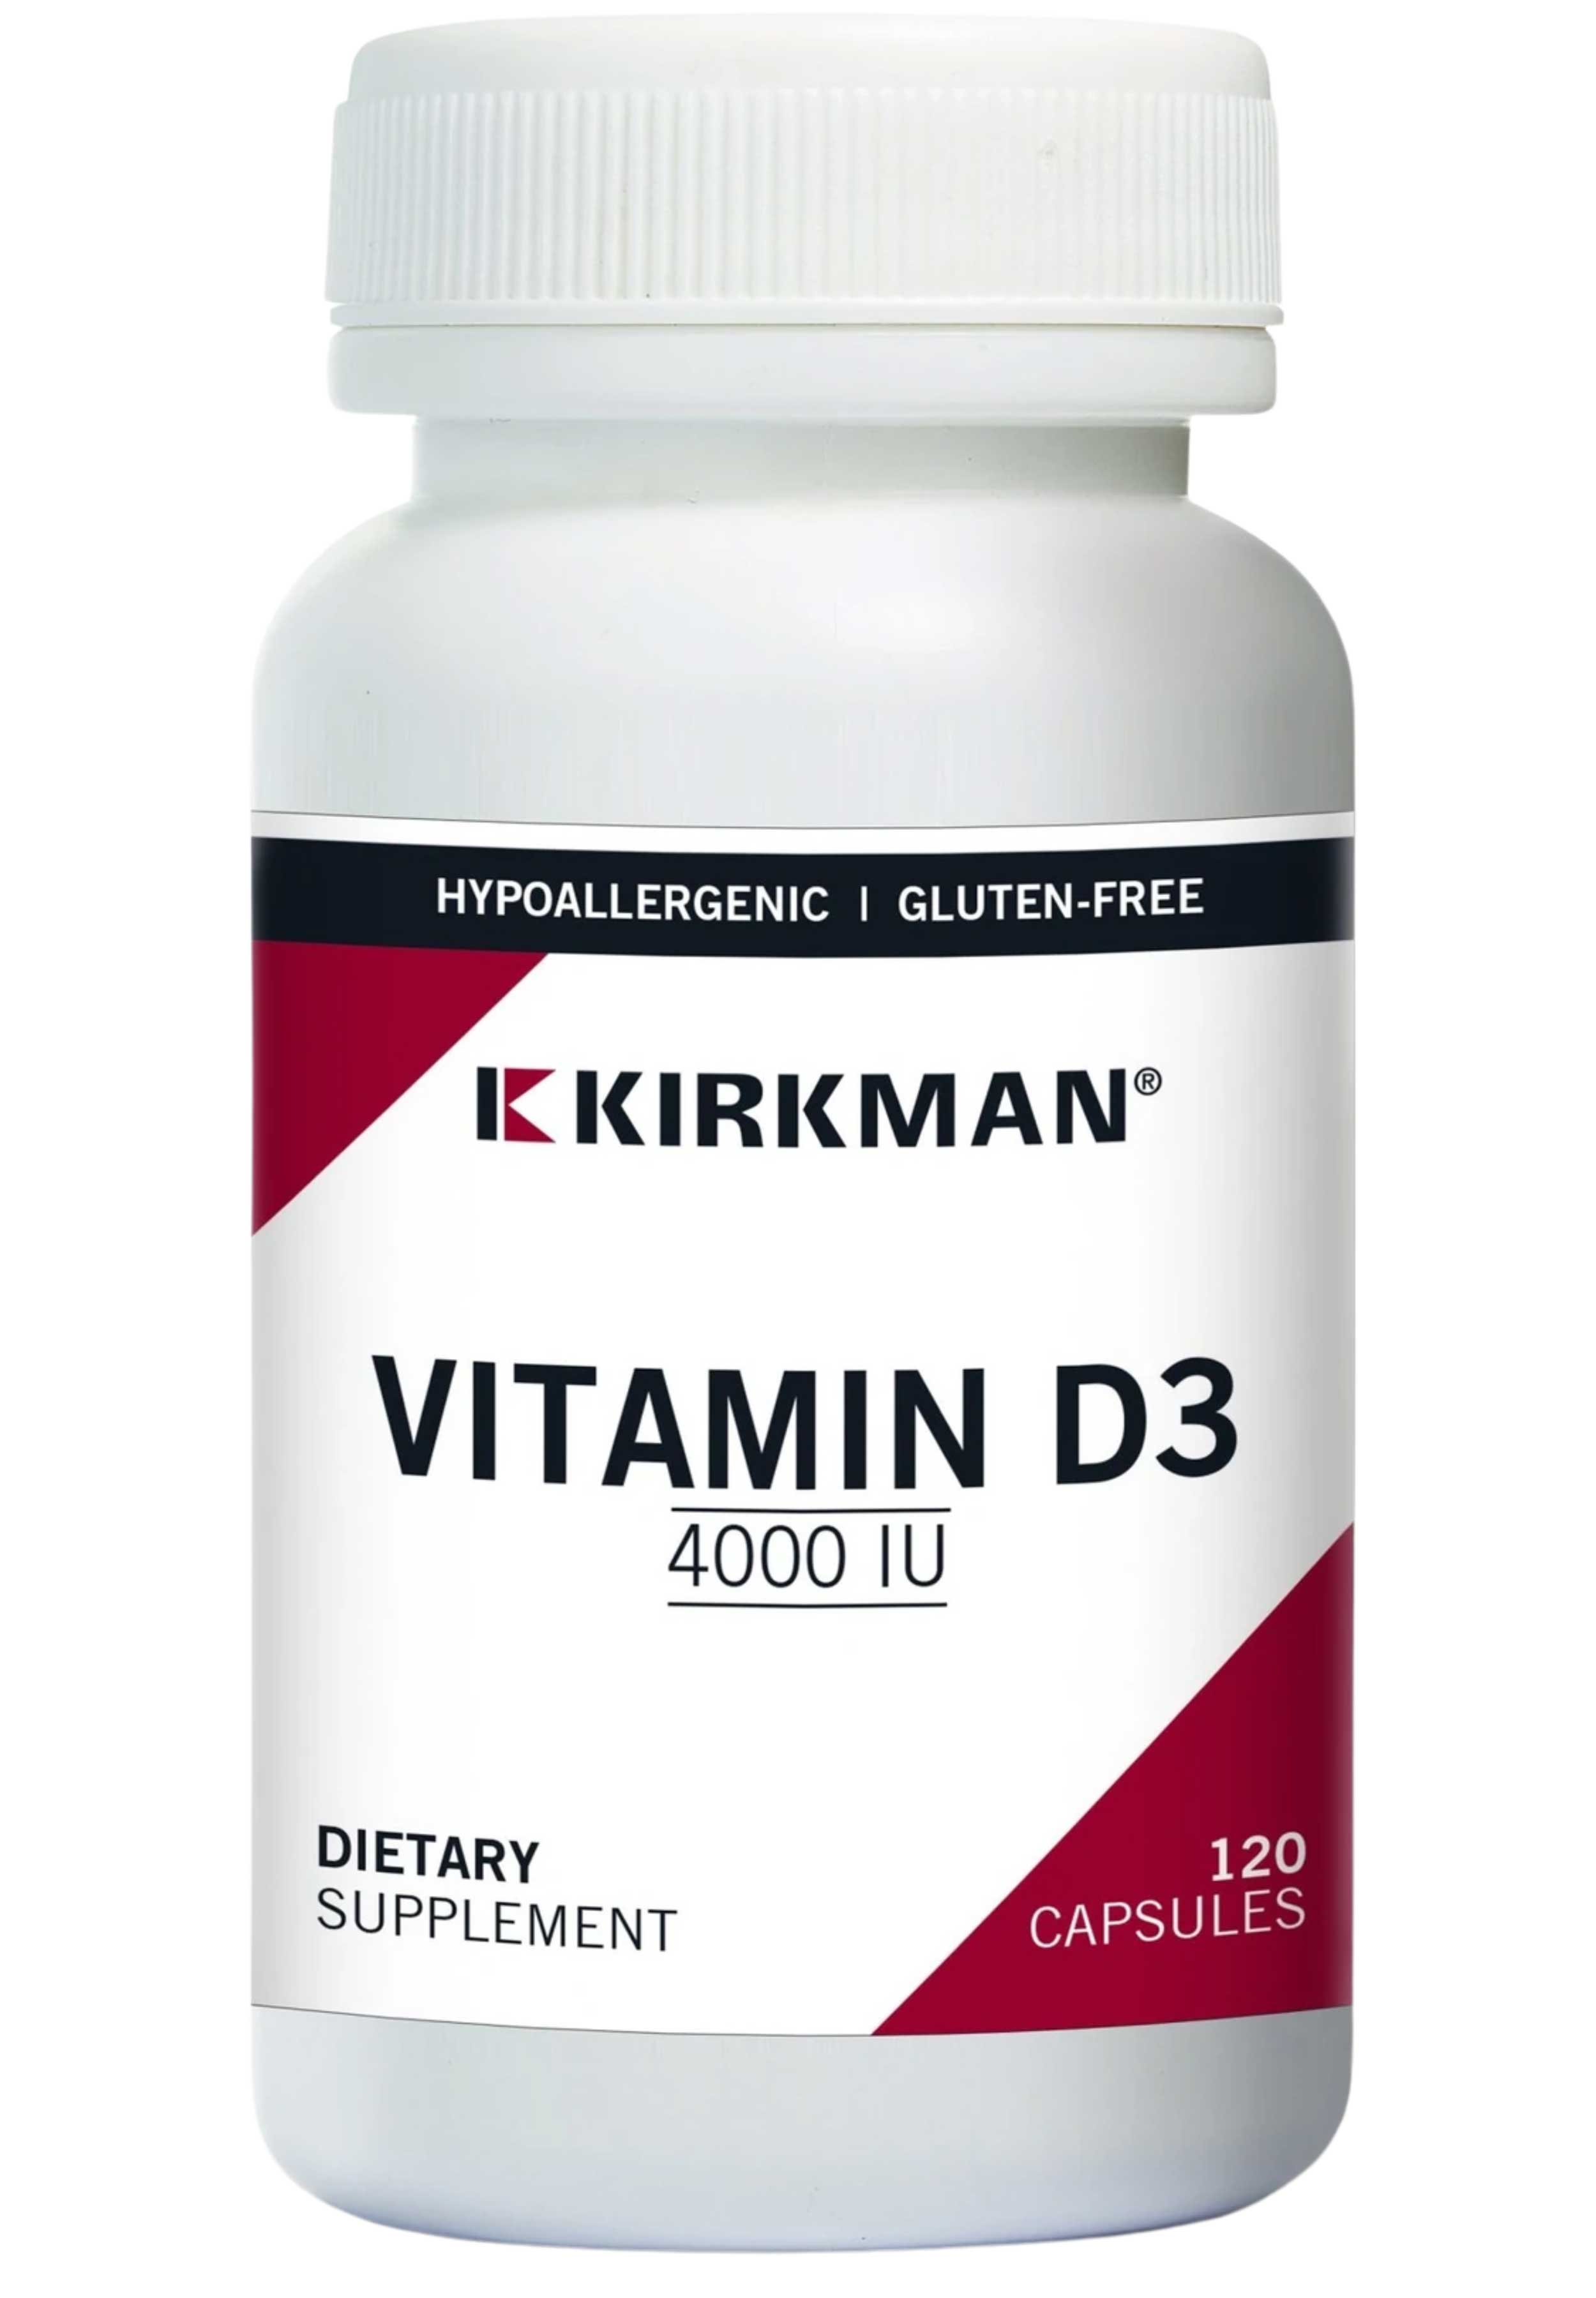 Kirkman Vitamin D3 4000 IU